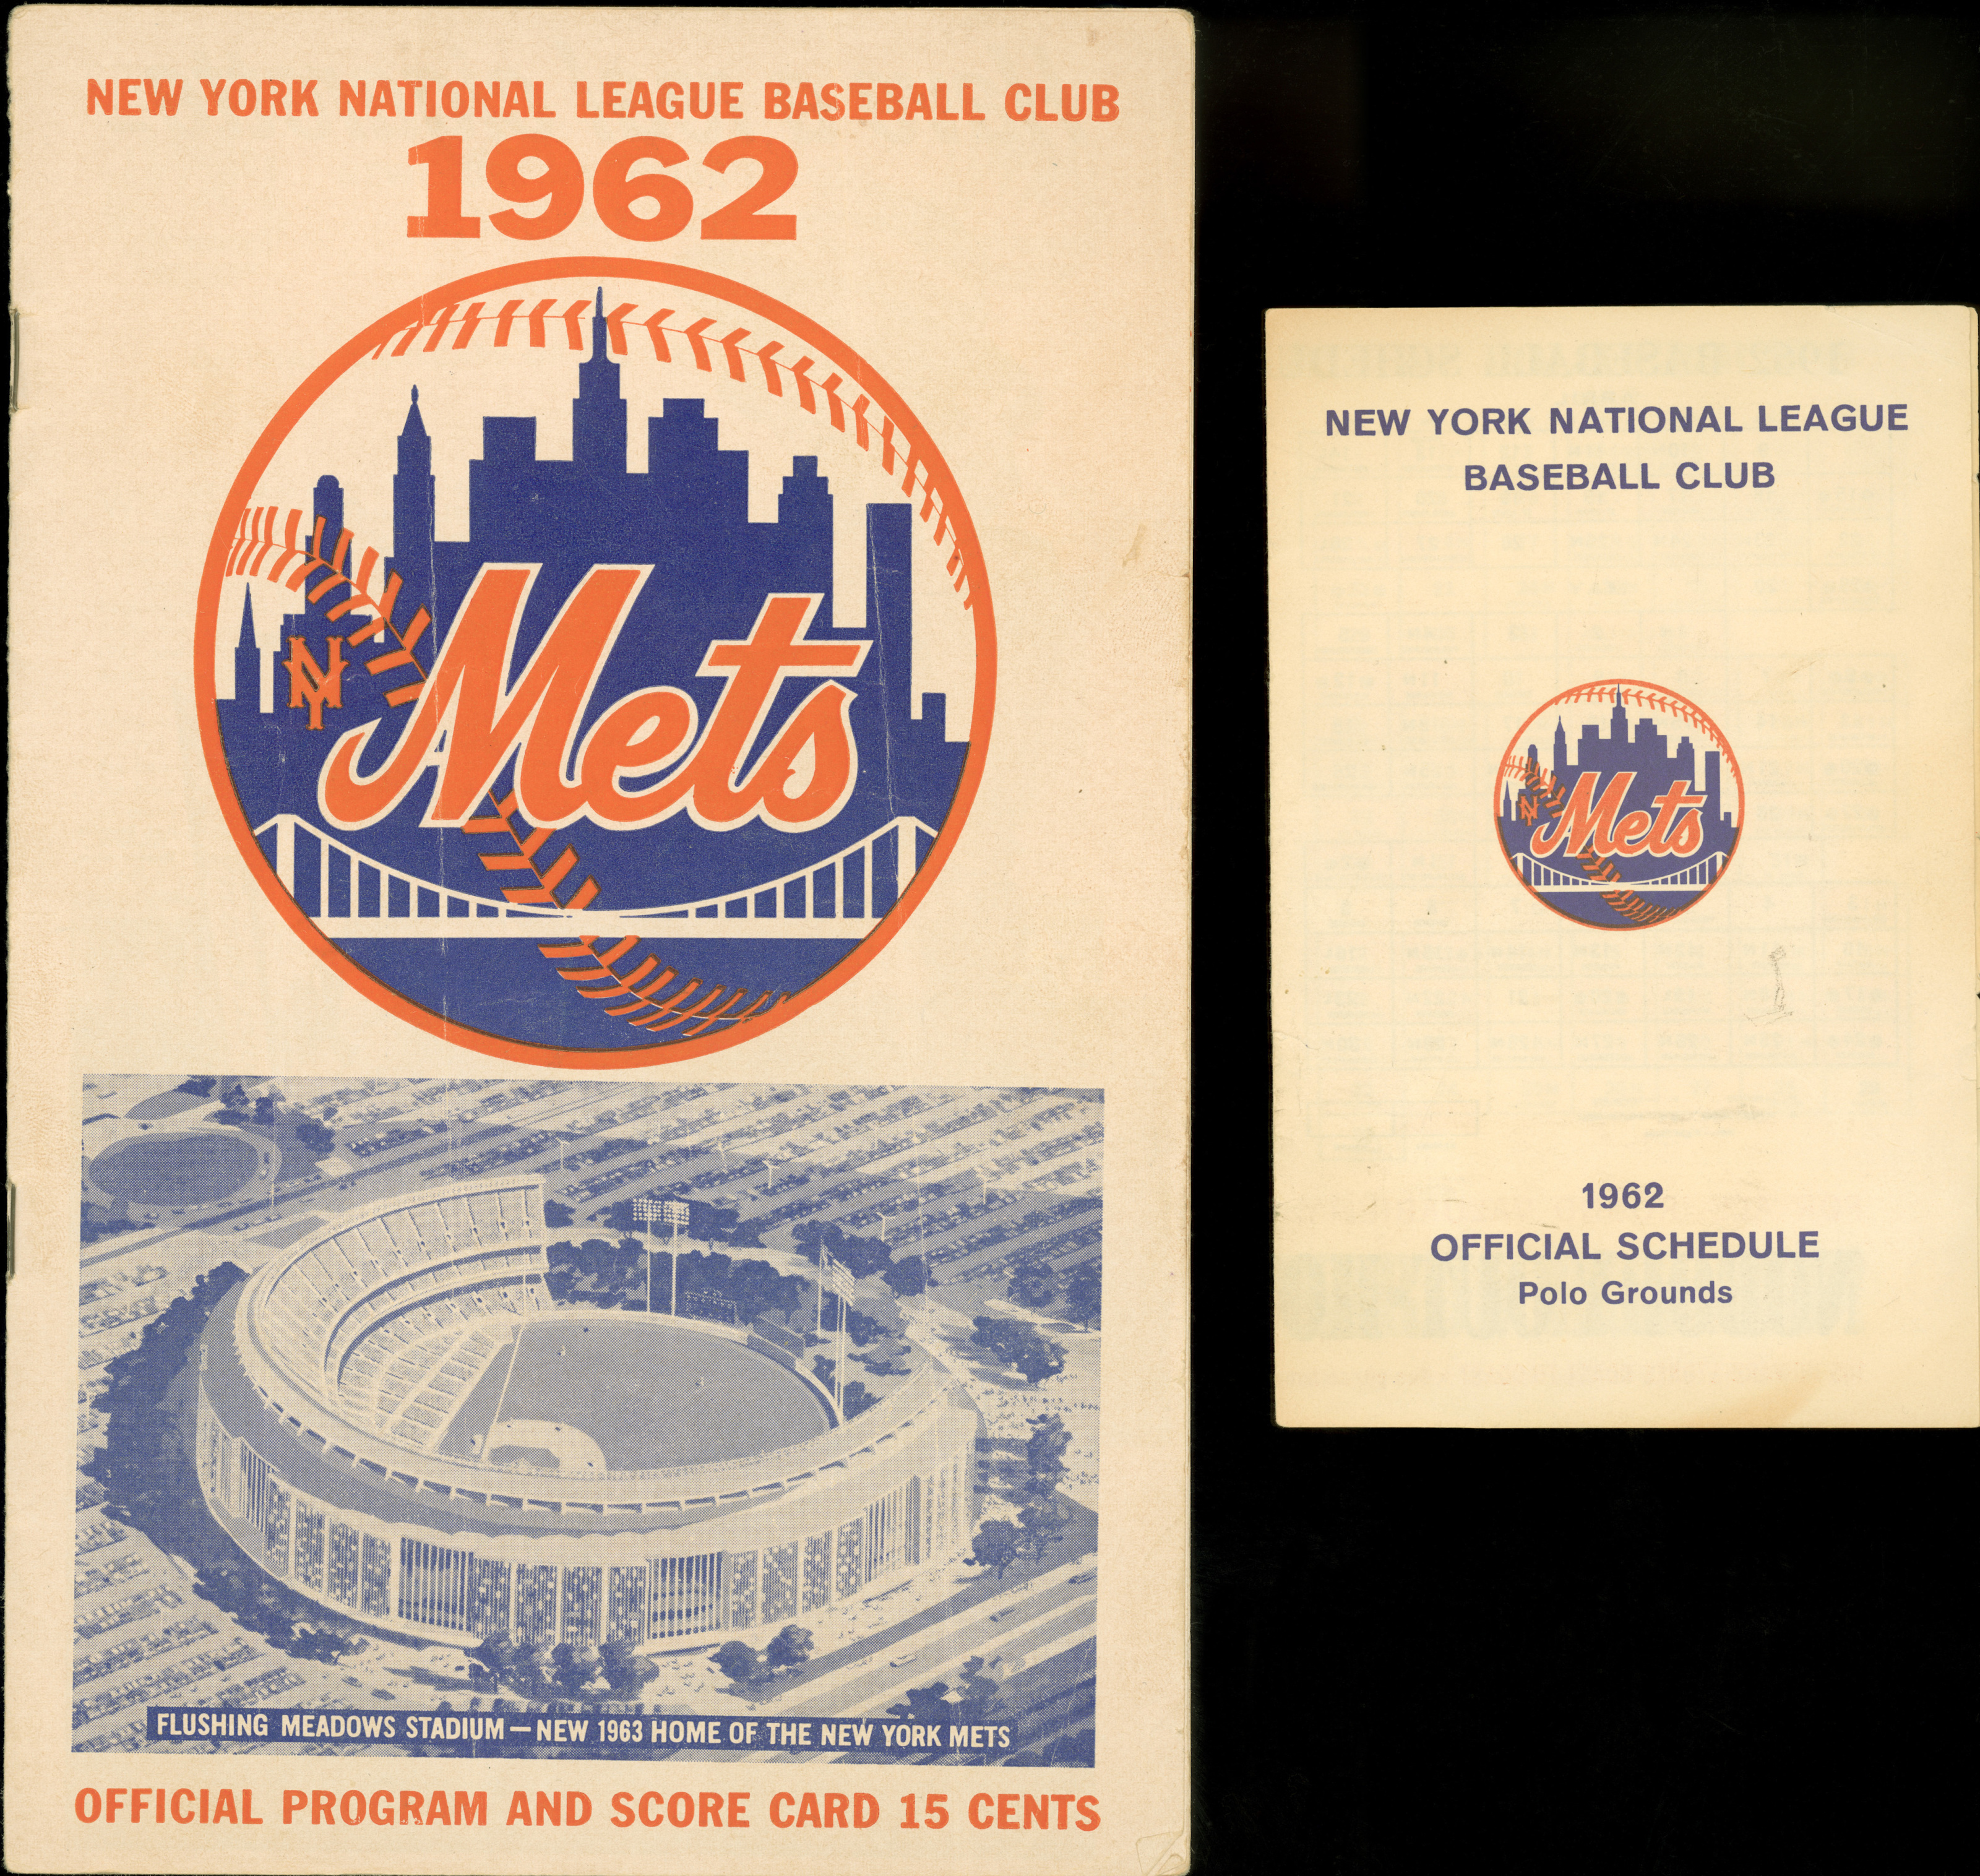 New York Mets Established 1962 Circle Pin